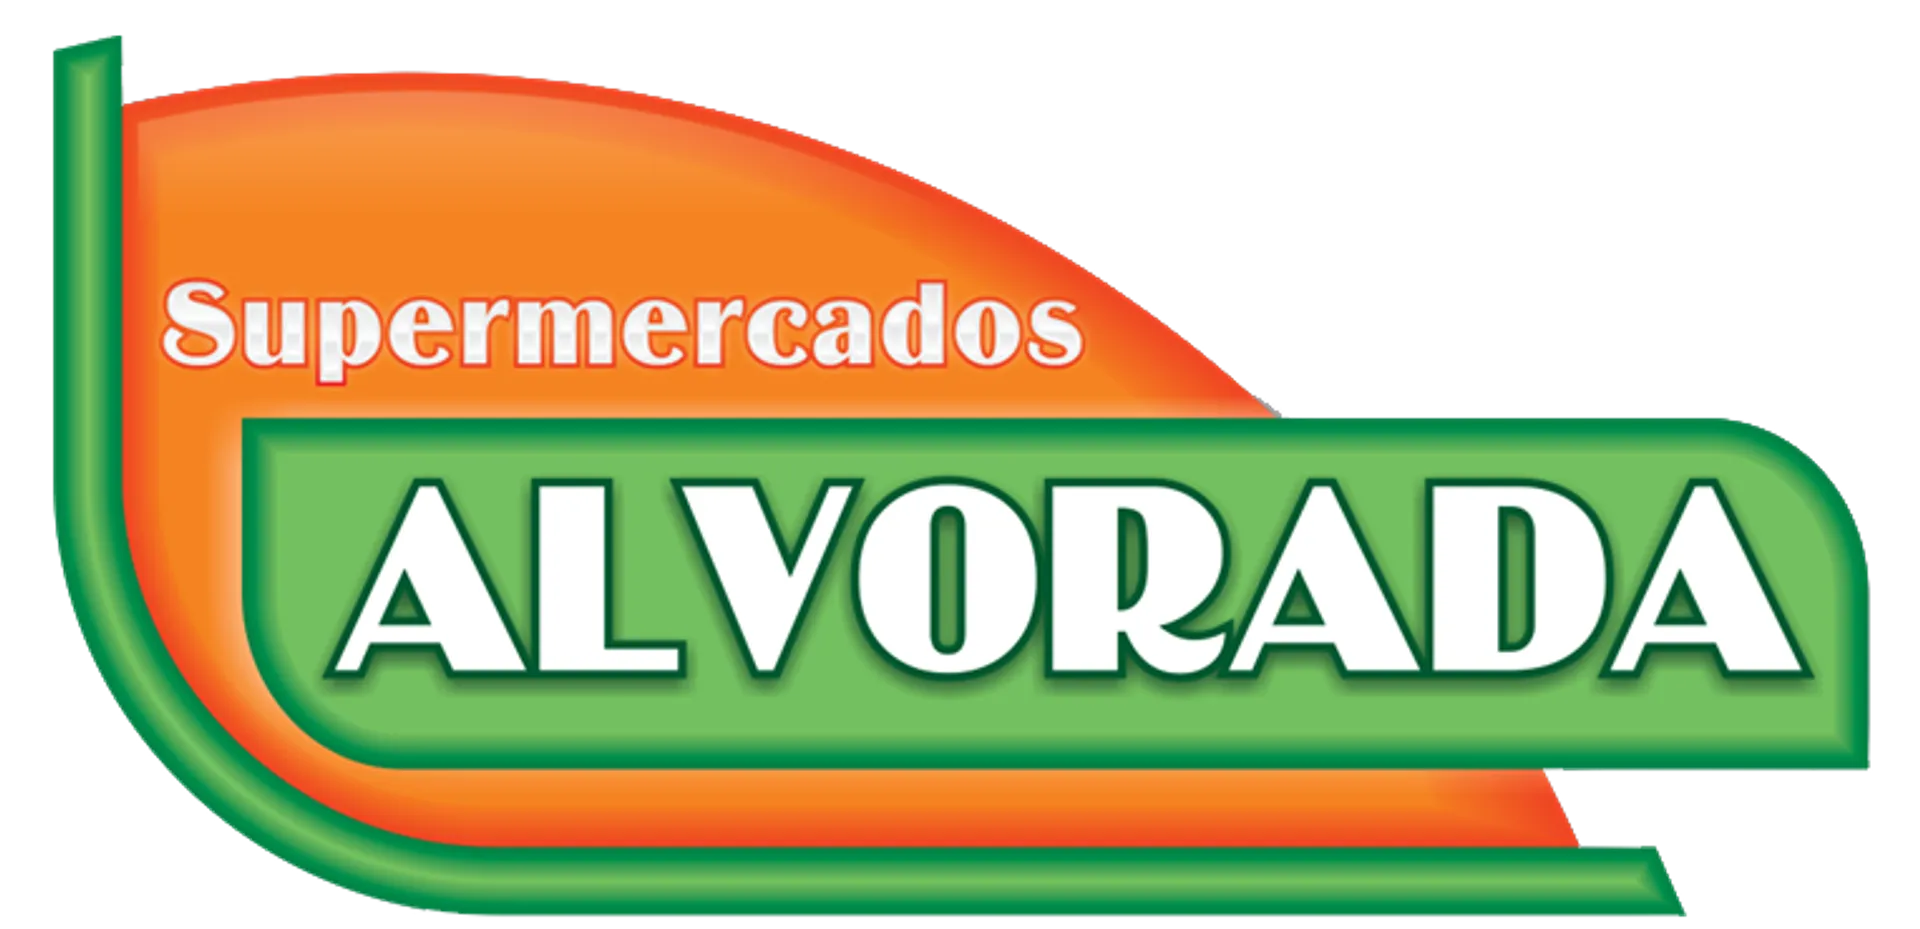 ALVORADA logo